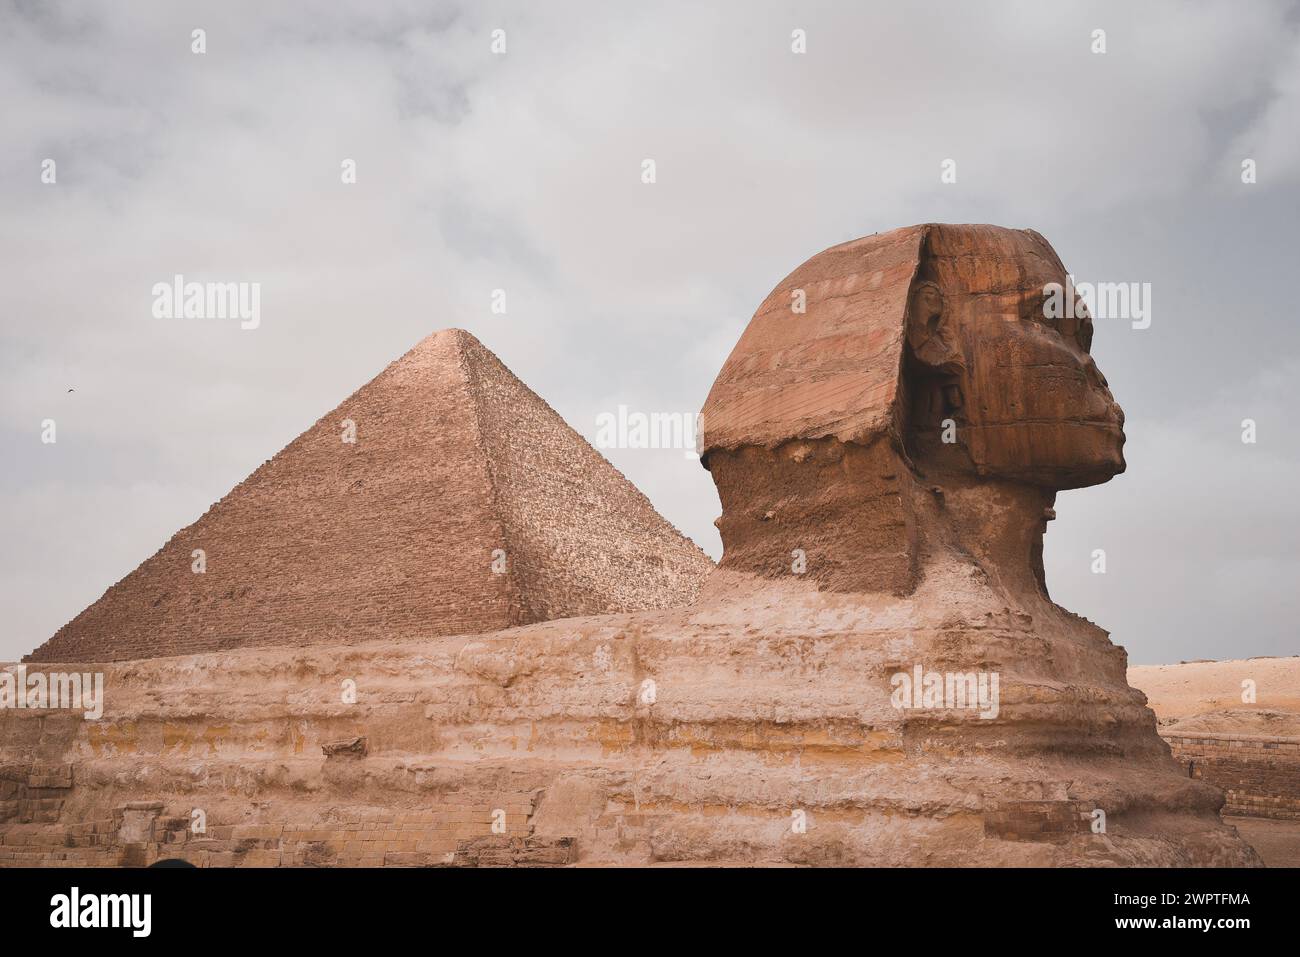 Le Grand Sphinx de Gizeh devant les pyramides de Gizeh, Egypte Banque D'Images